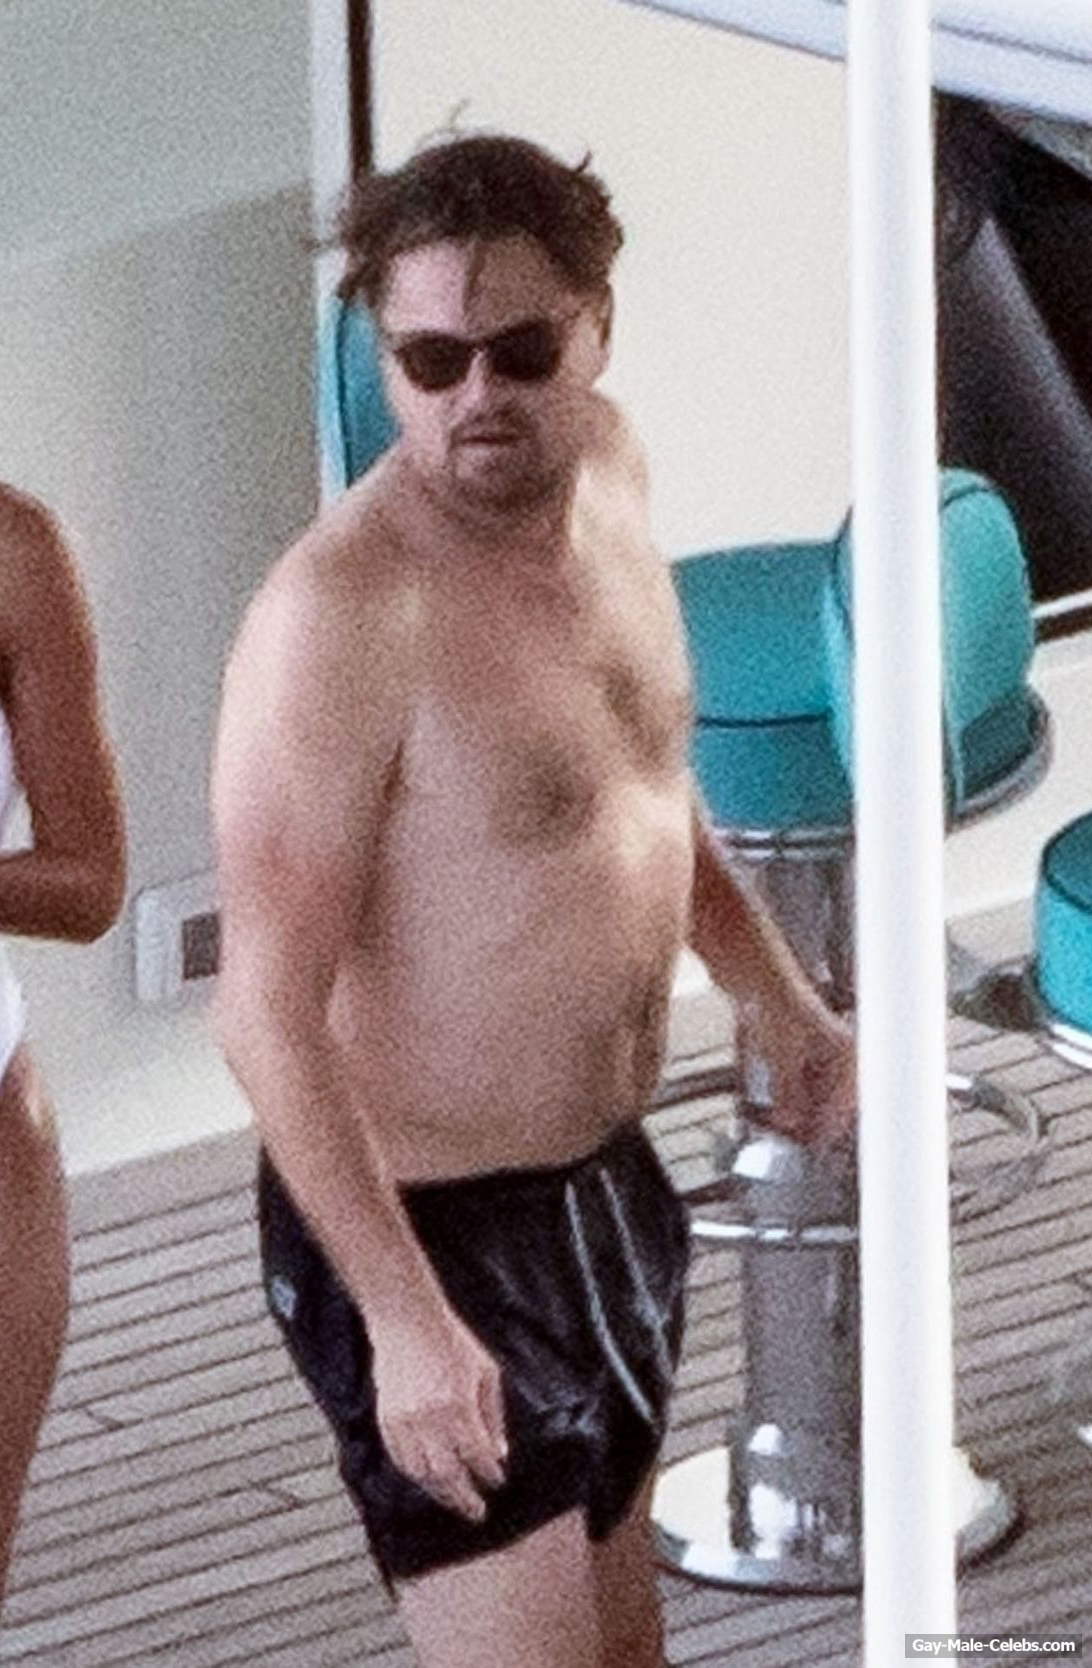 Leonardo DiCaprio Shirtless (5 Photos)